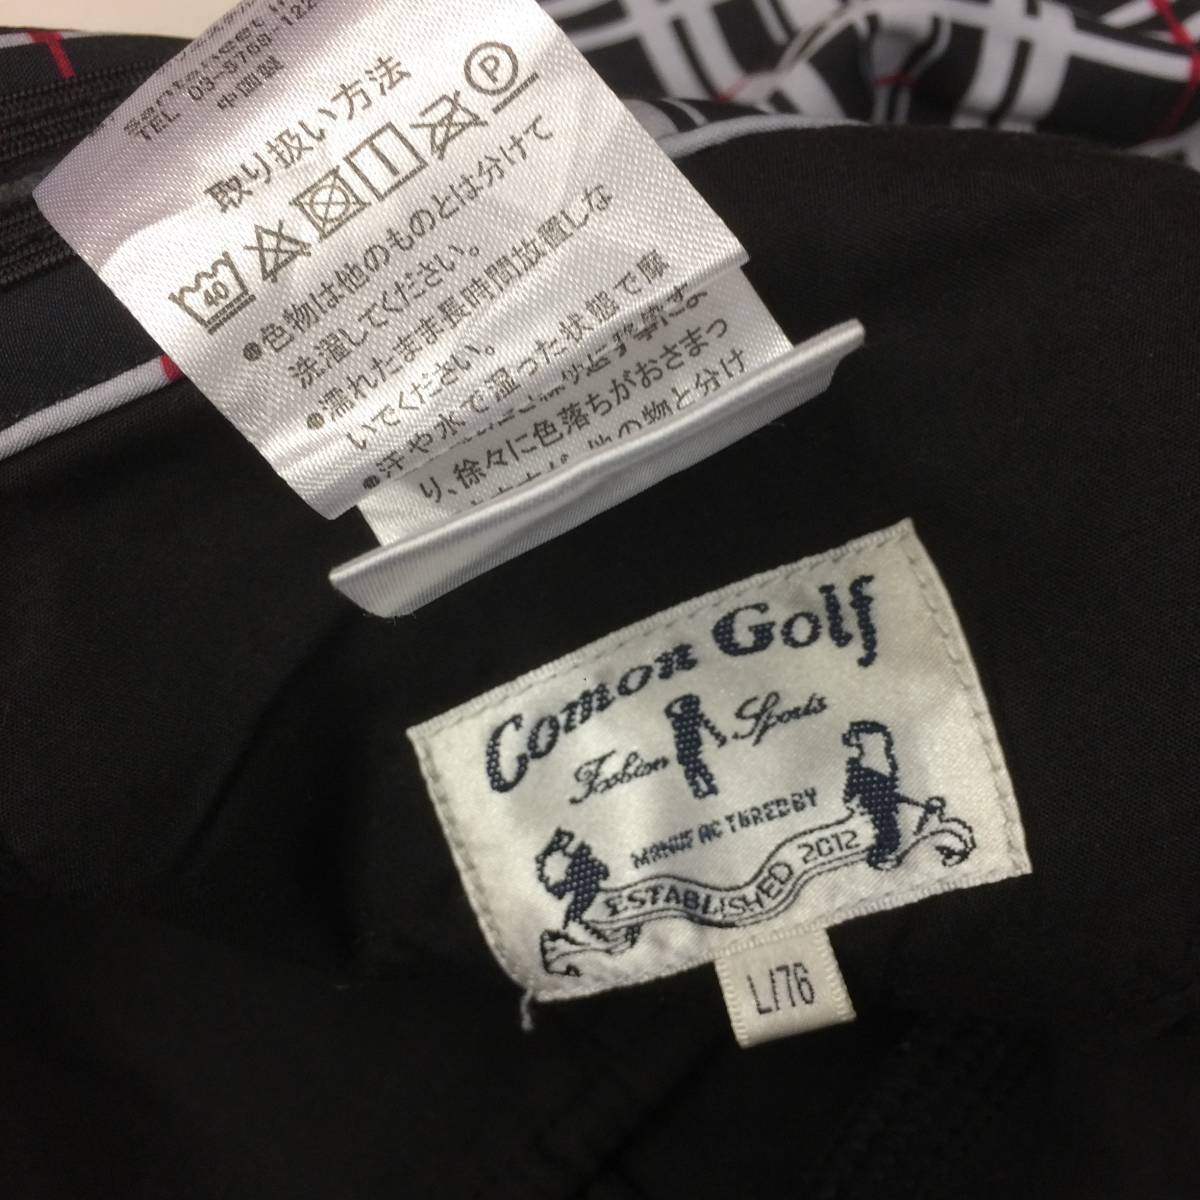  common Golf Comon Golf склеивание брюки обратная сторона ворсистый в клетку L/76 размер 